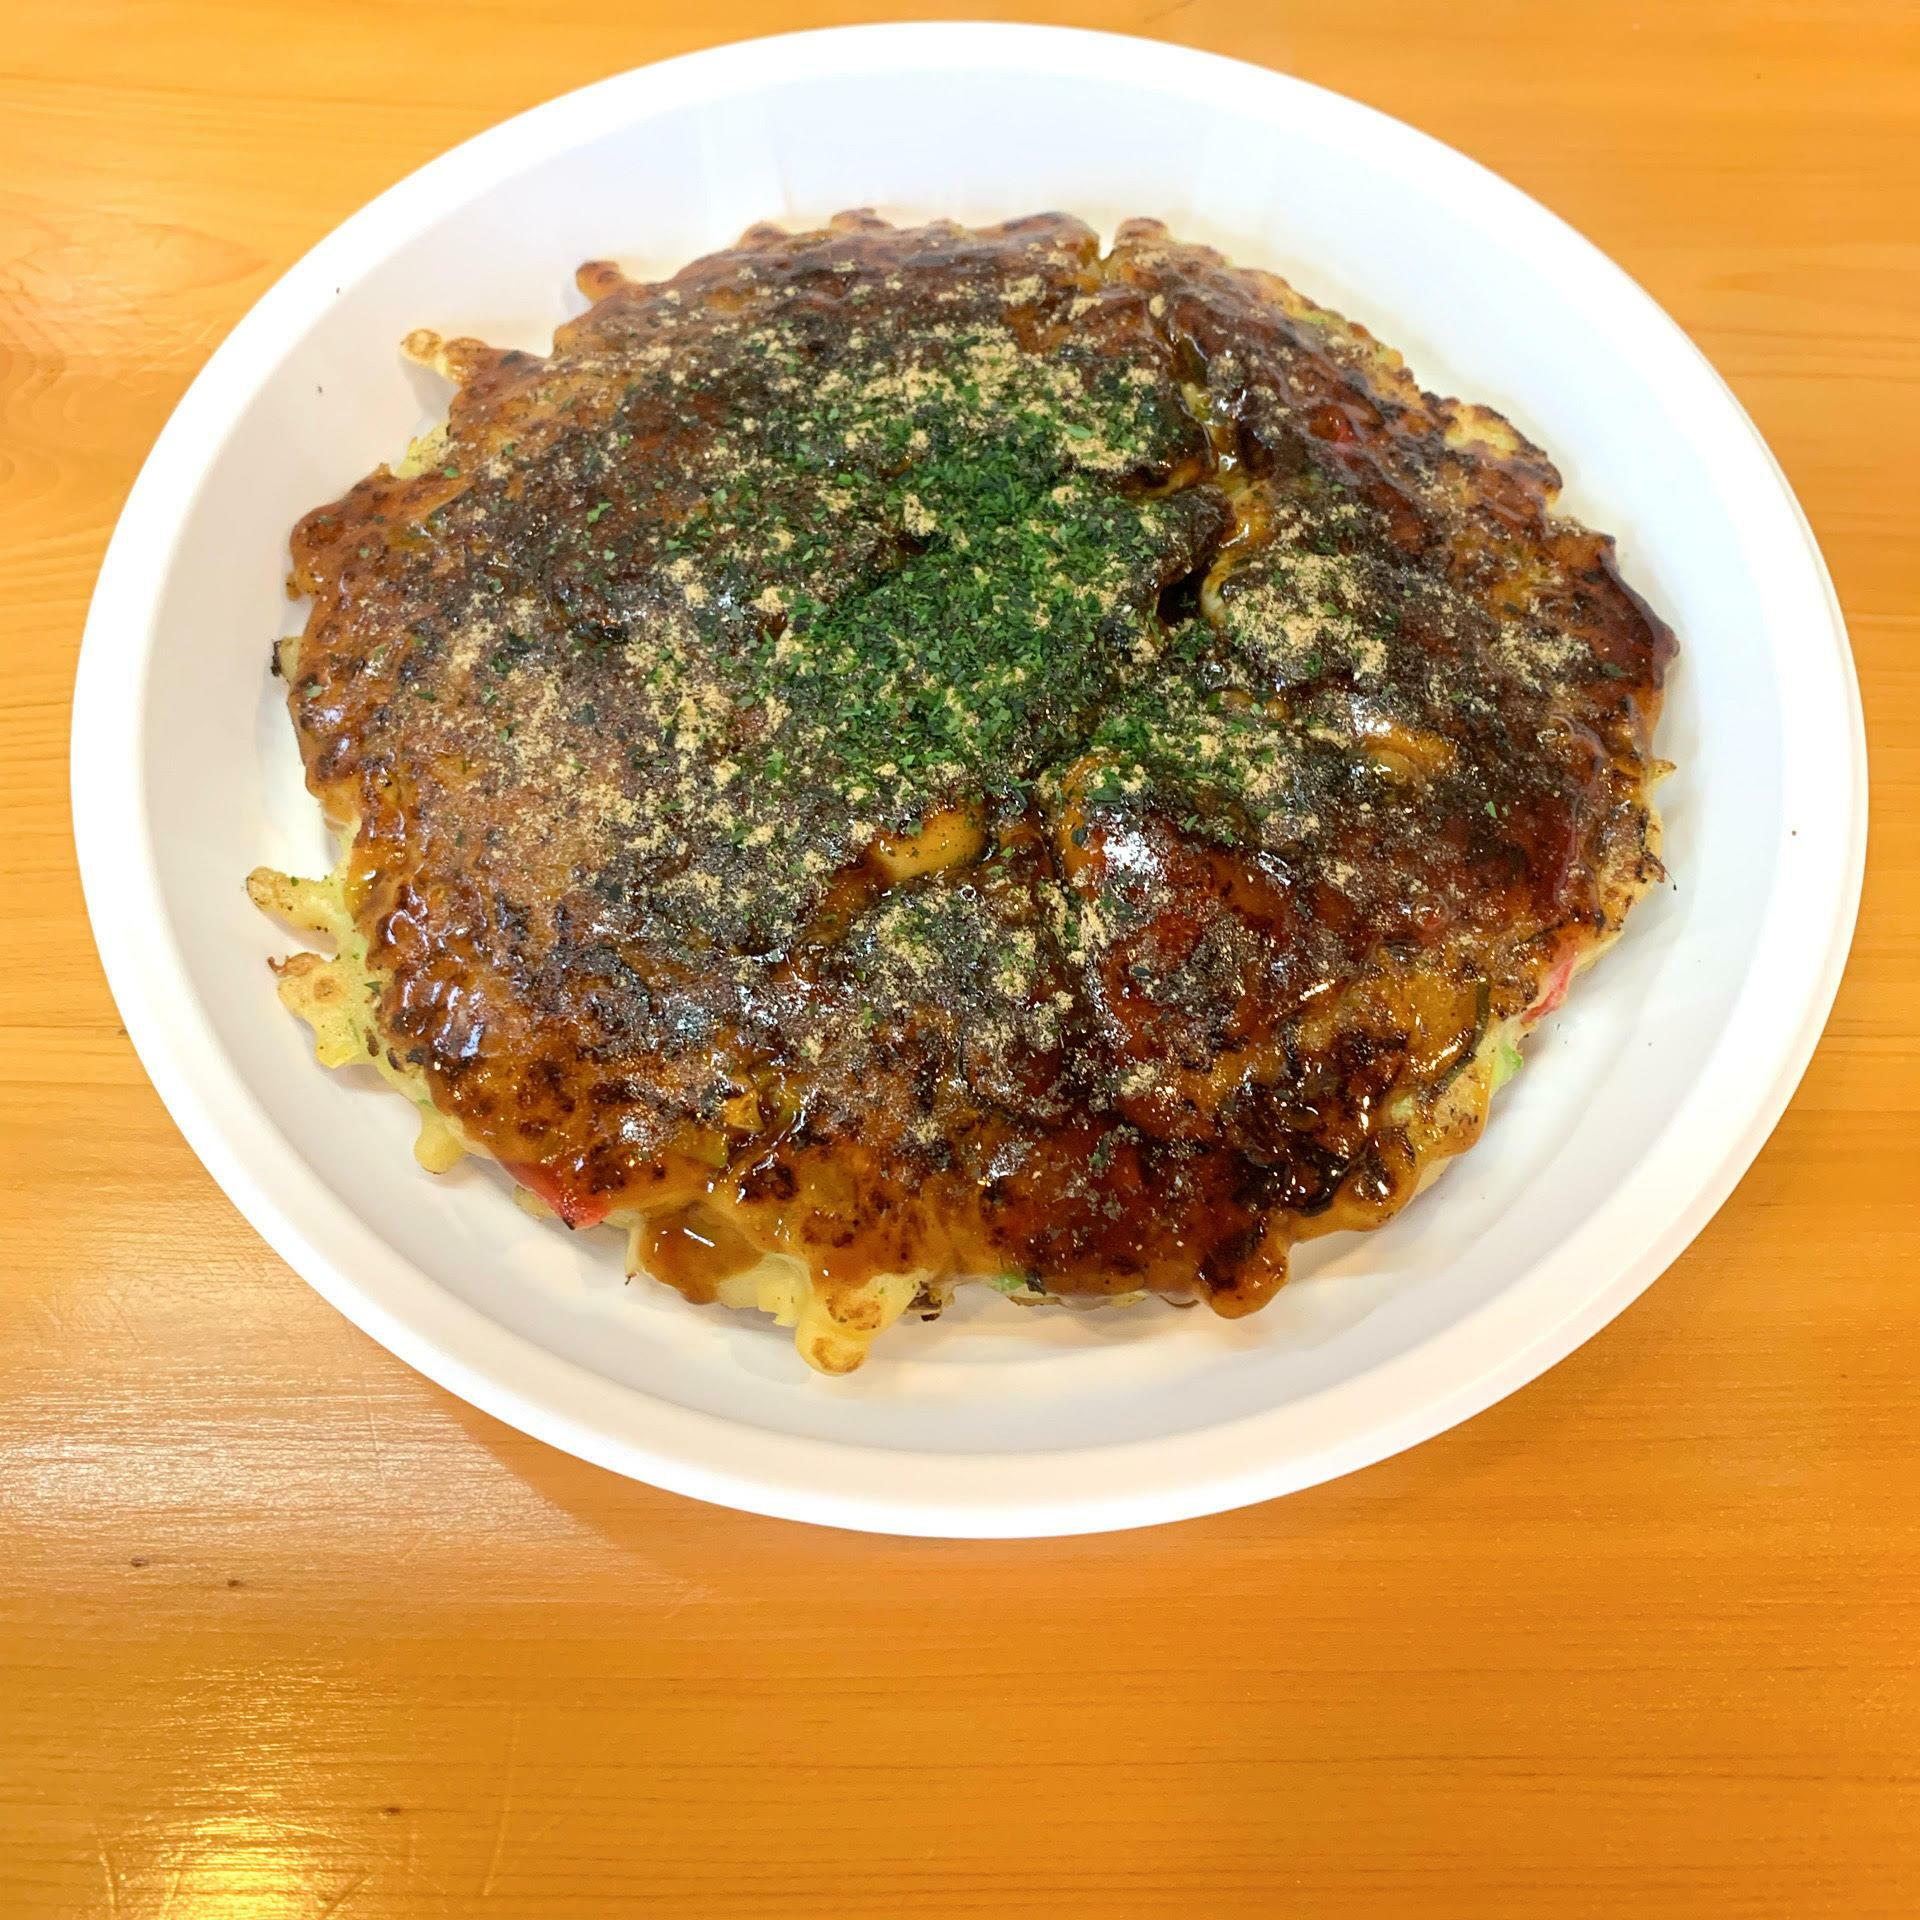 関西風の牡蠣お好み焼き。